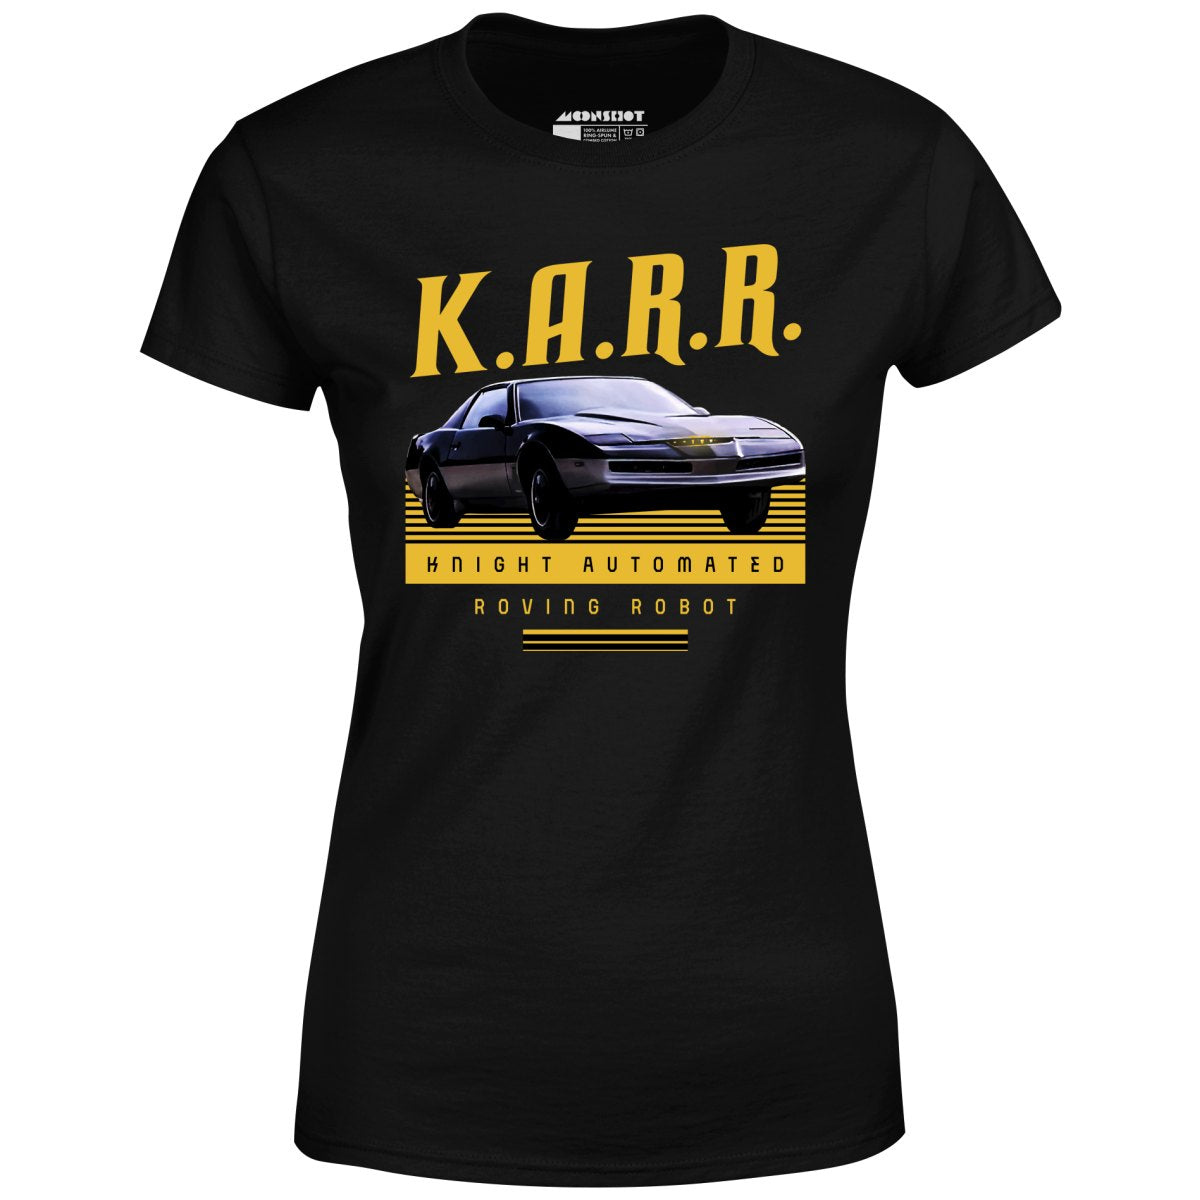 KARR - Women's T-Shirt